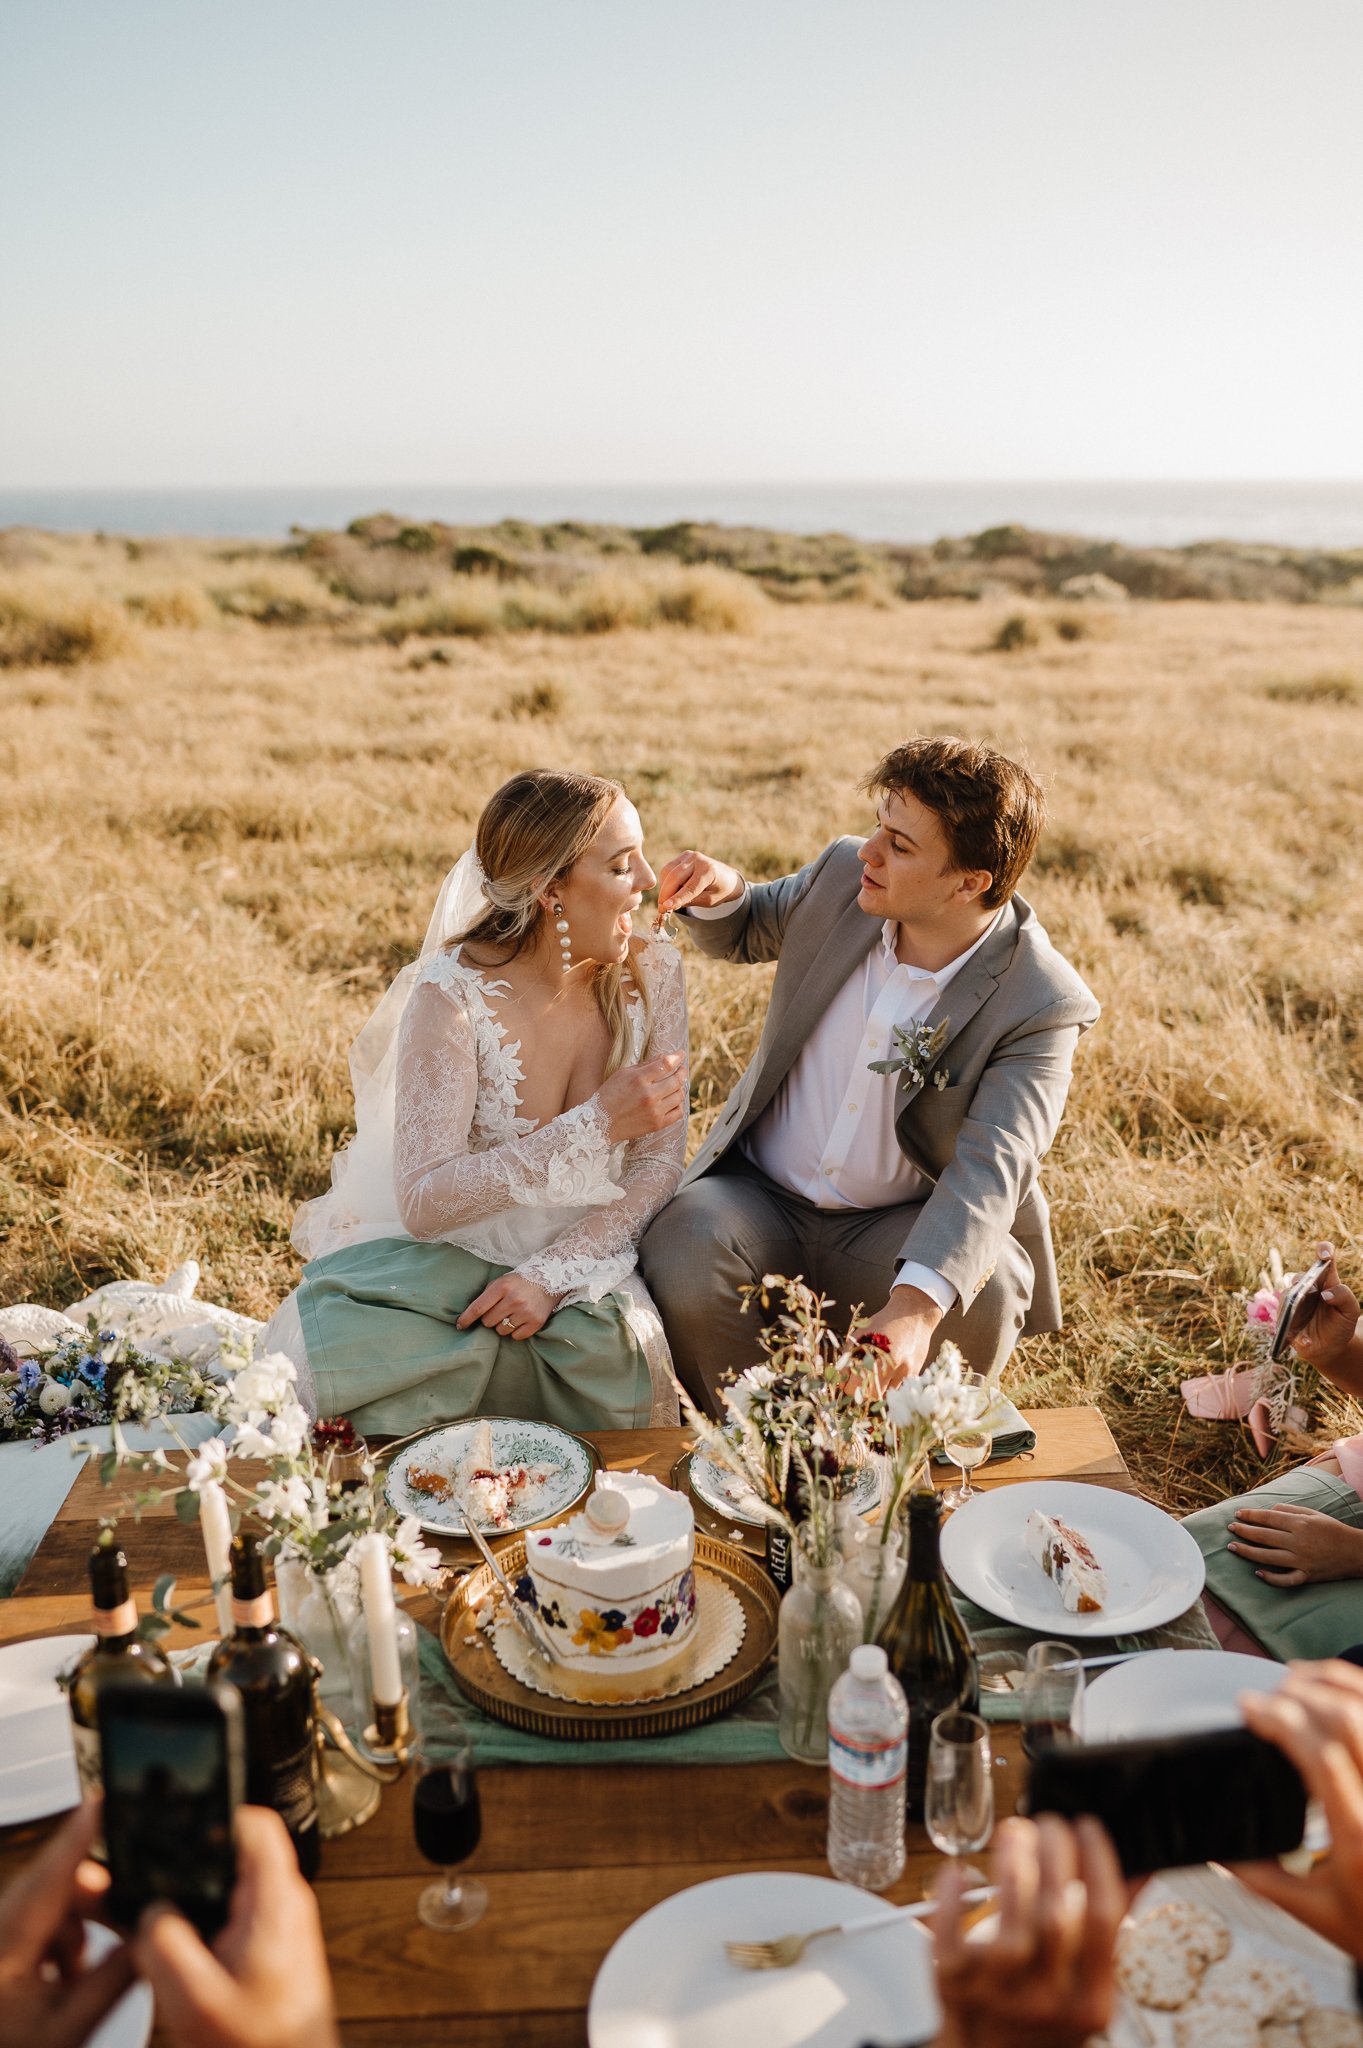 Big Sur Wedding cliffside picnic with groom feeding bride wedding cake